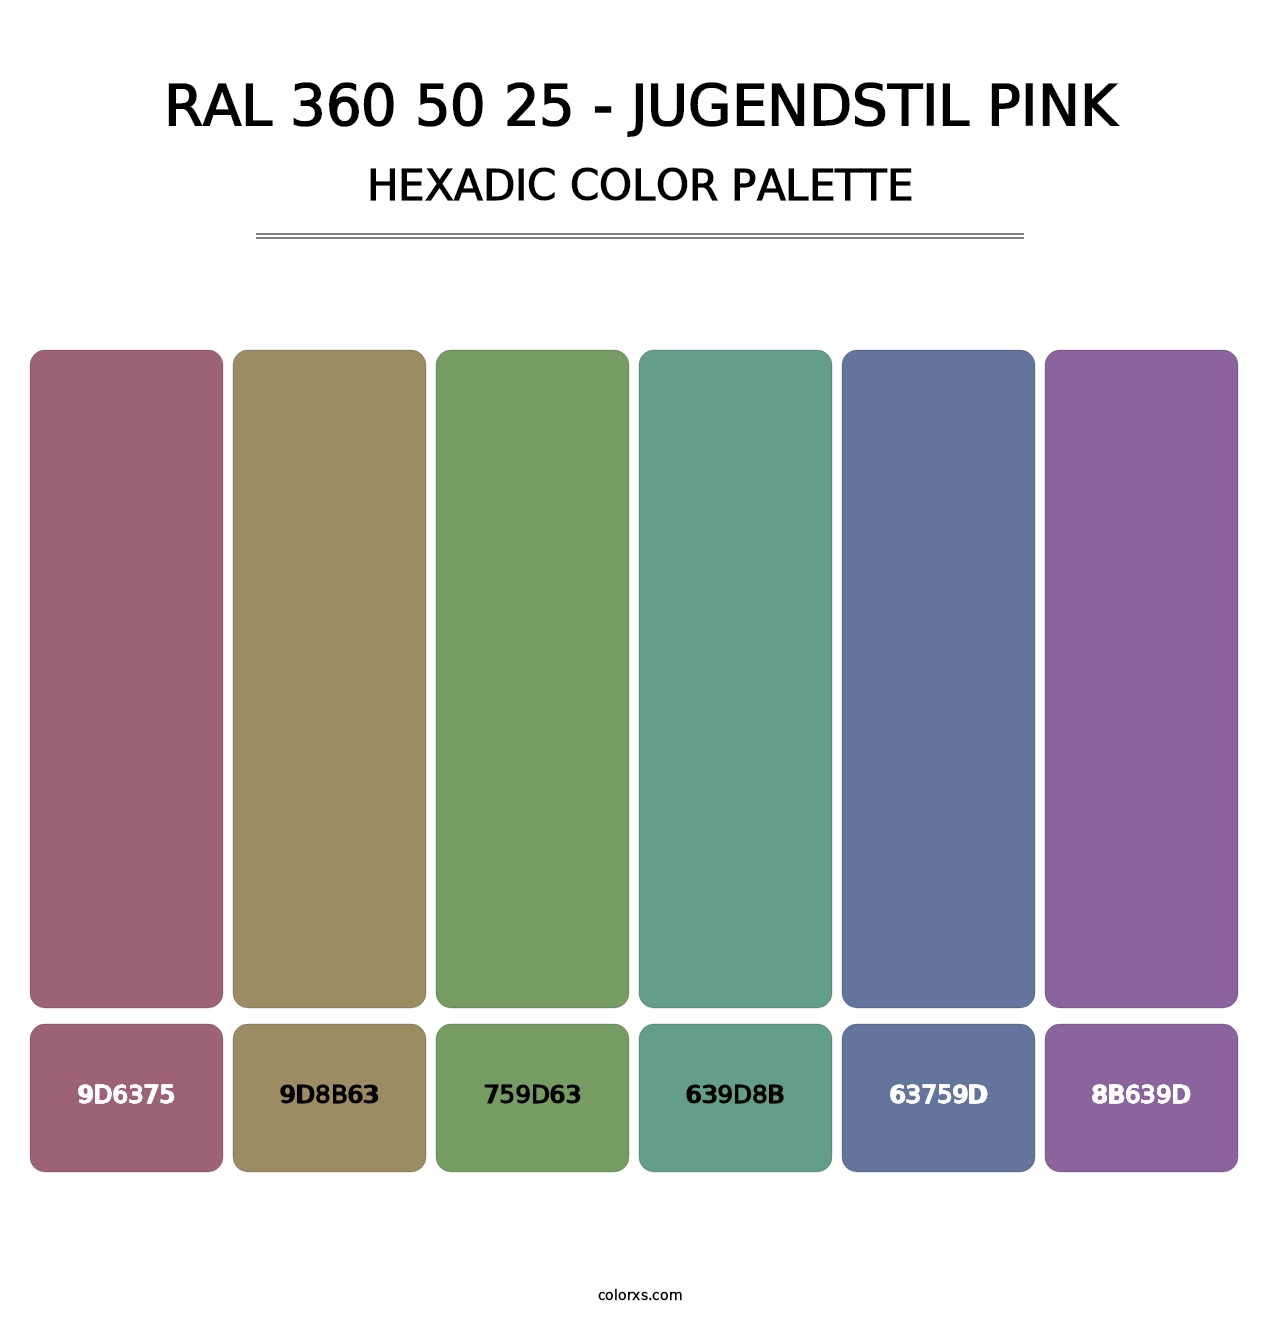 RAL 360 50 25 - Jugendstil Pink - Hexadic Color Palette